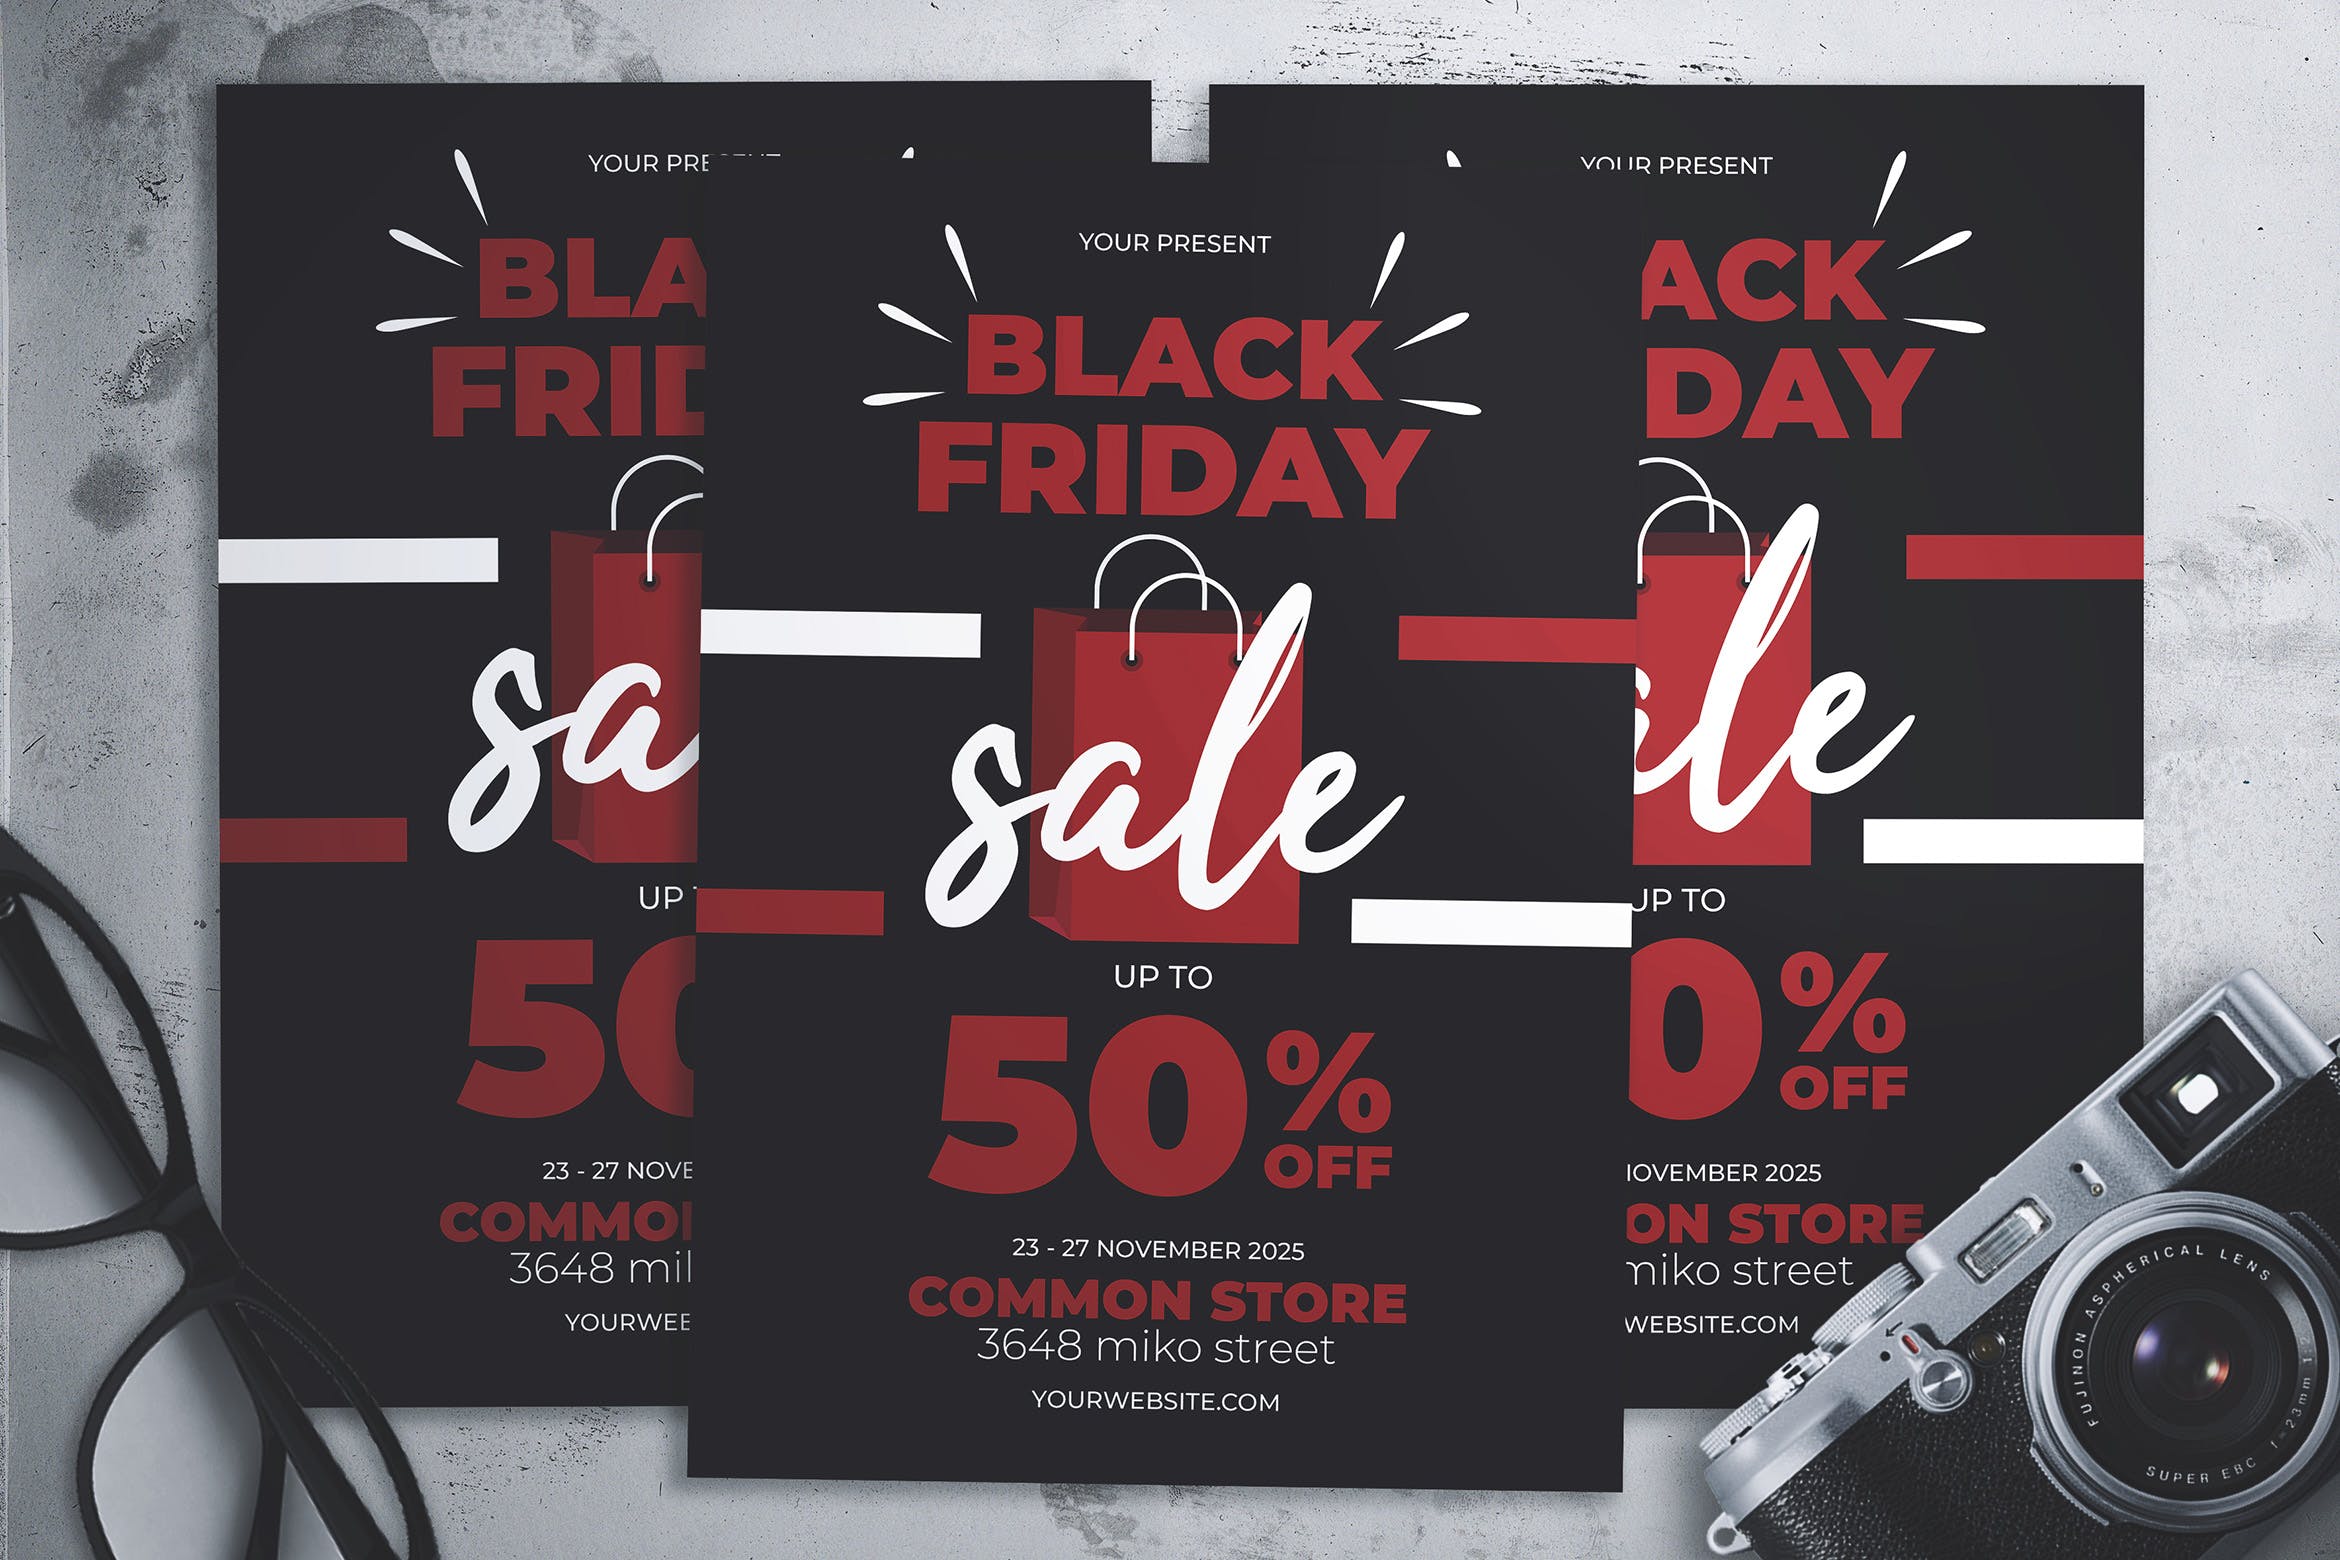 黑色星期五店铺打折活动宣传海报传单设计模板 Black Friday Flyer插图